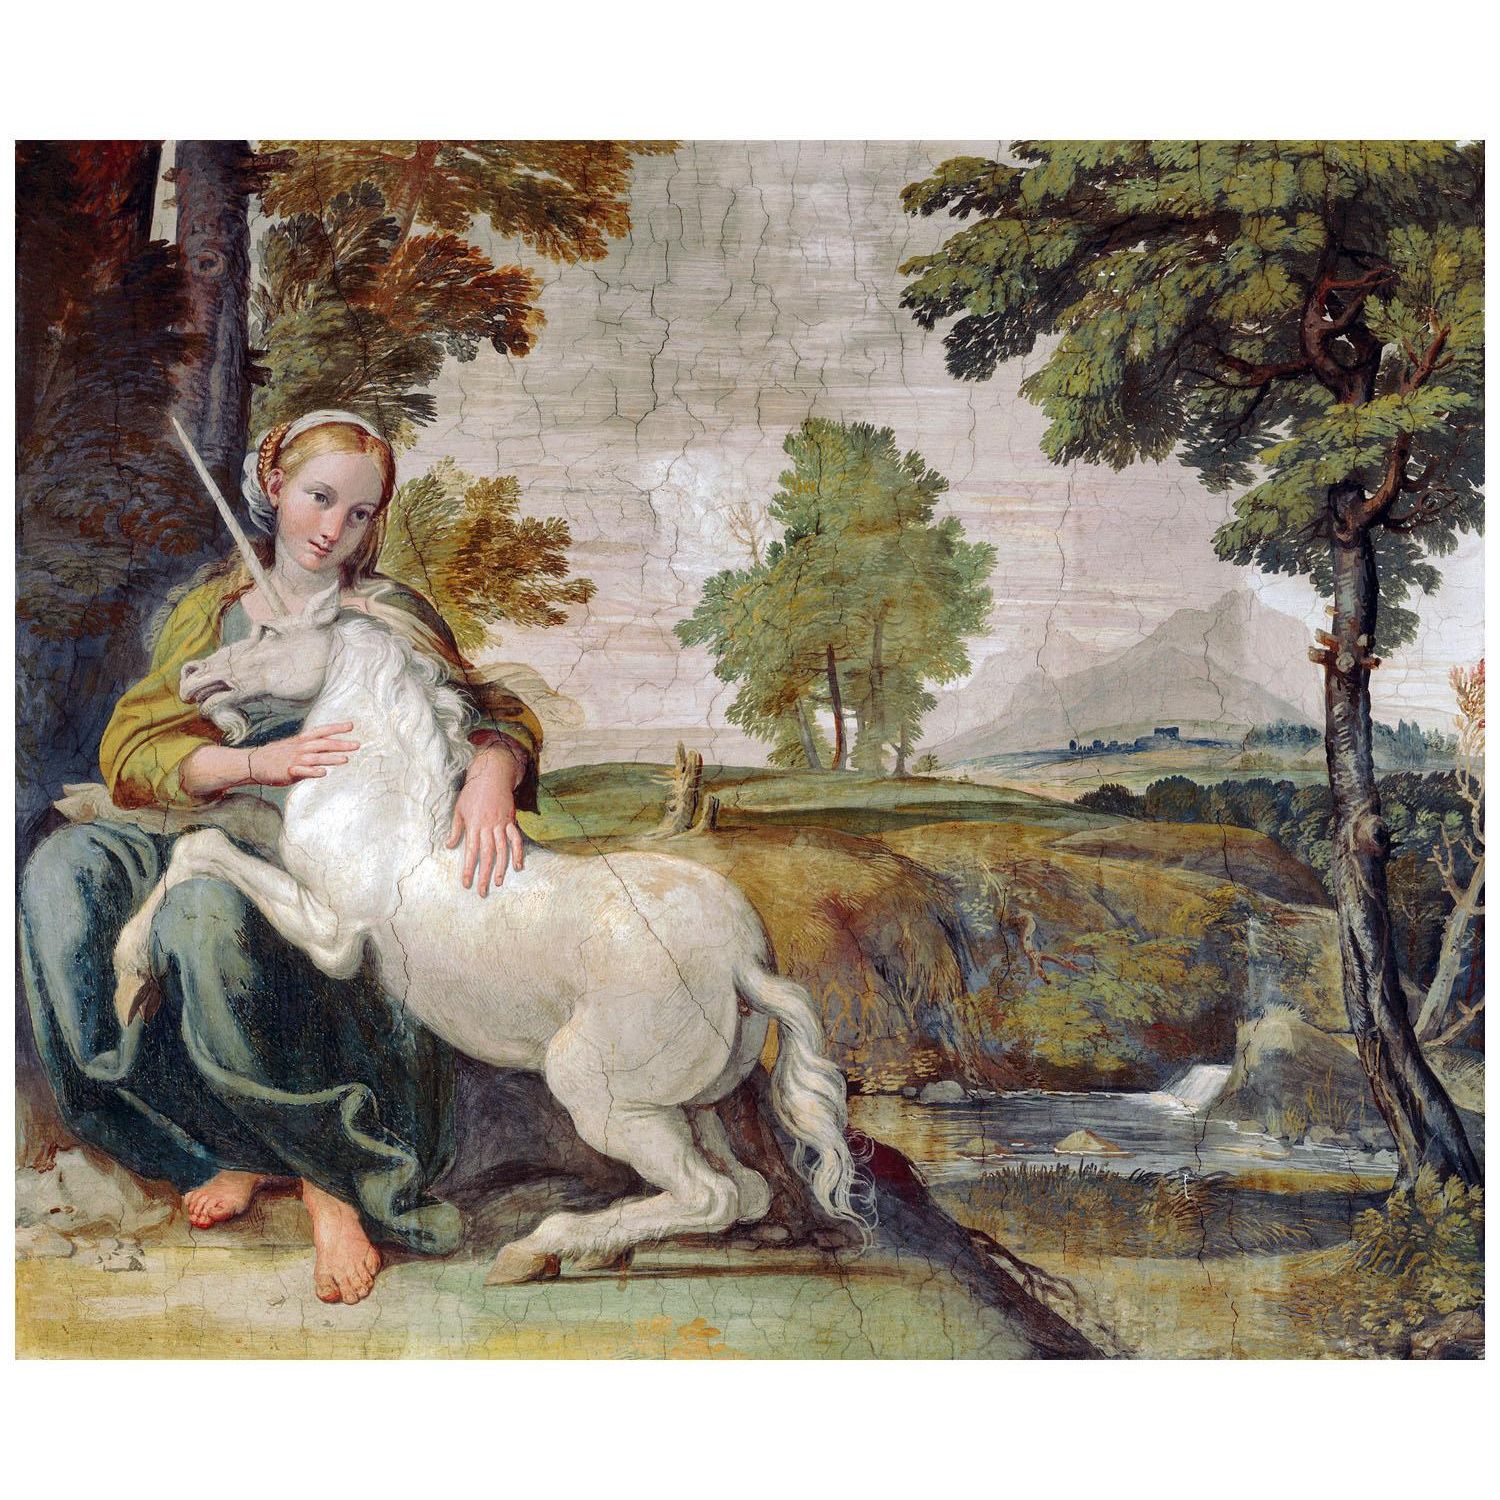 Domenichino. Vergine e Unicorno. 1602. Palazzo Farnese, Roma